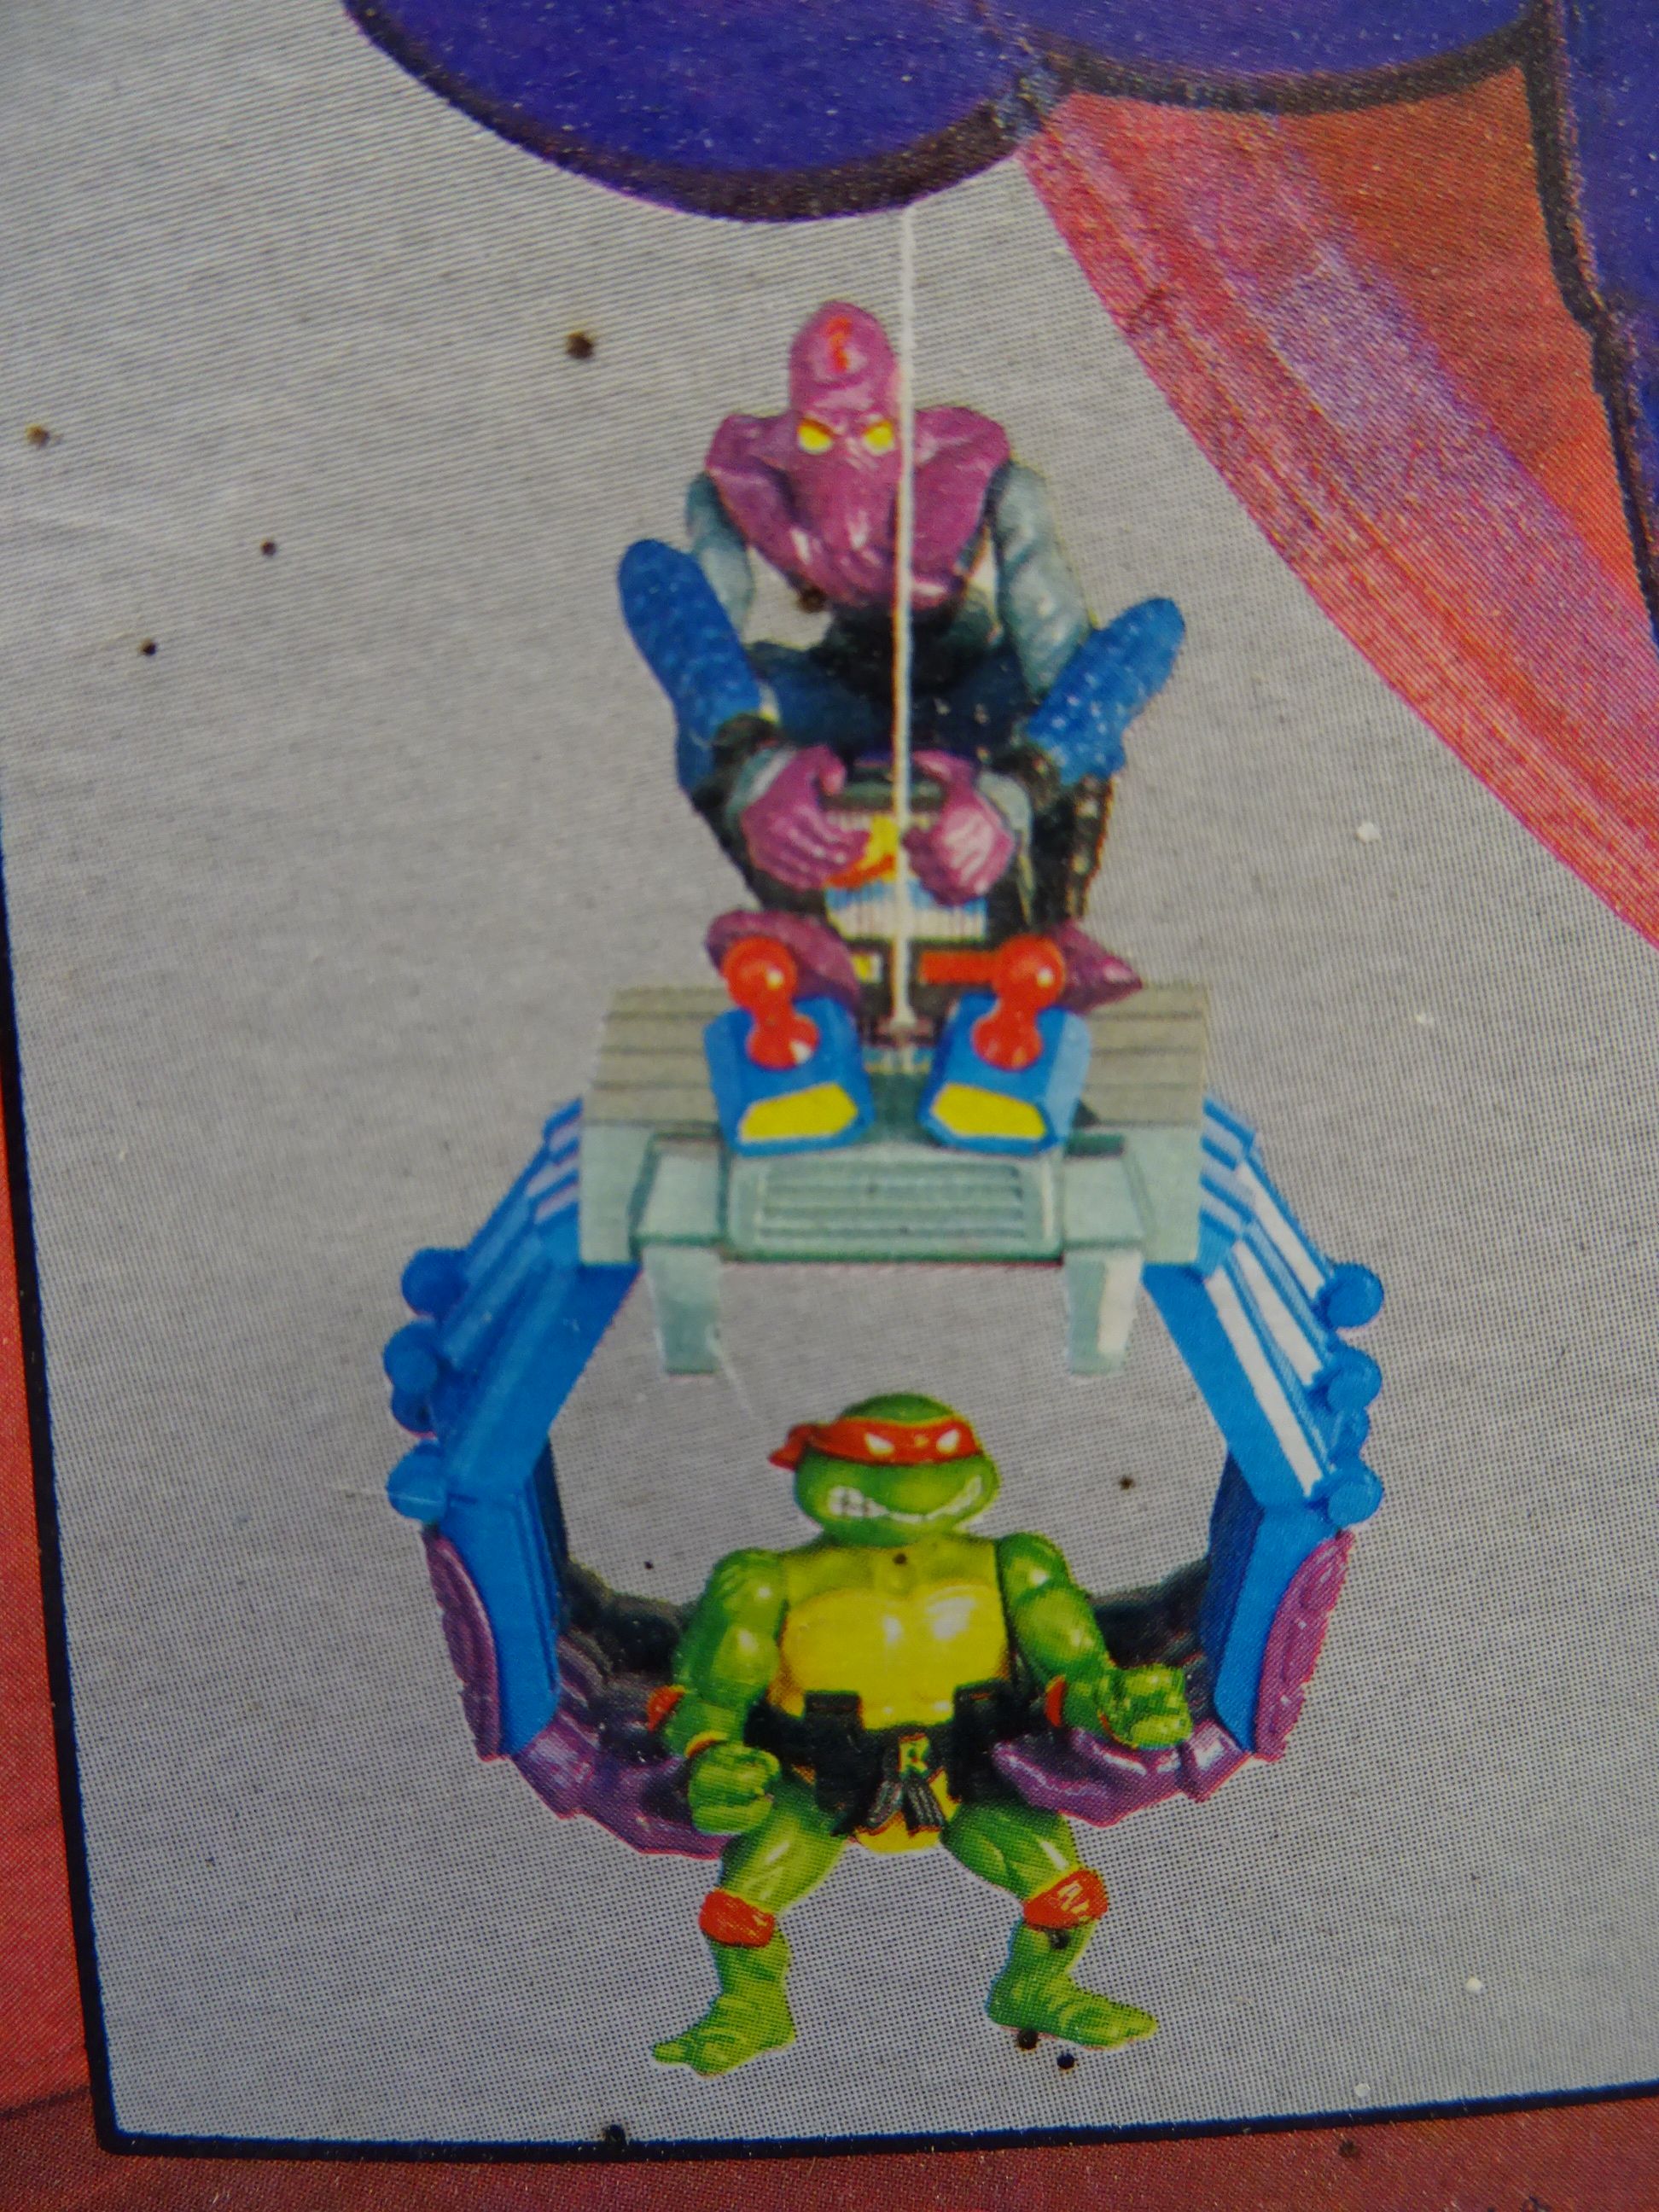 Boxed Playmates Bandai Teenage Mutant Ninja Turtles Knucklehead Foot Machine, appearing unopened - Image 2 of 3